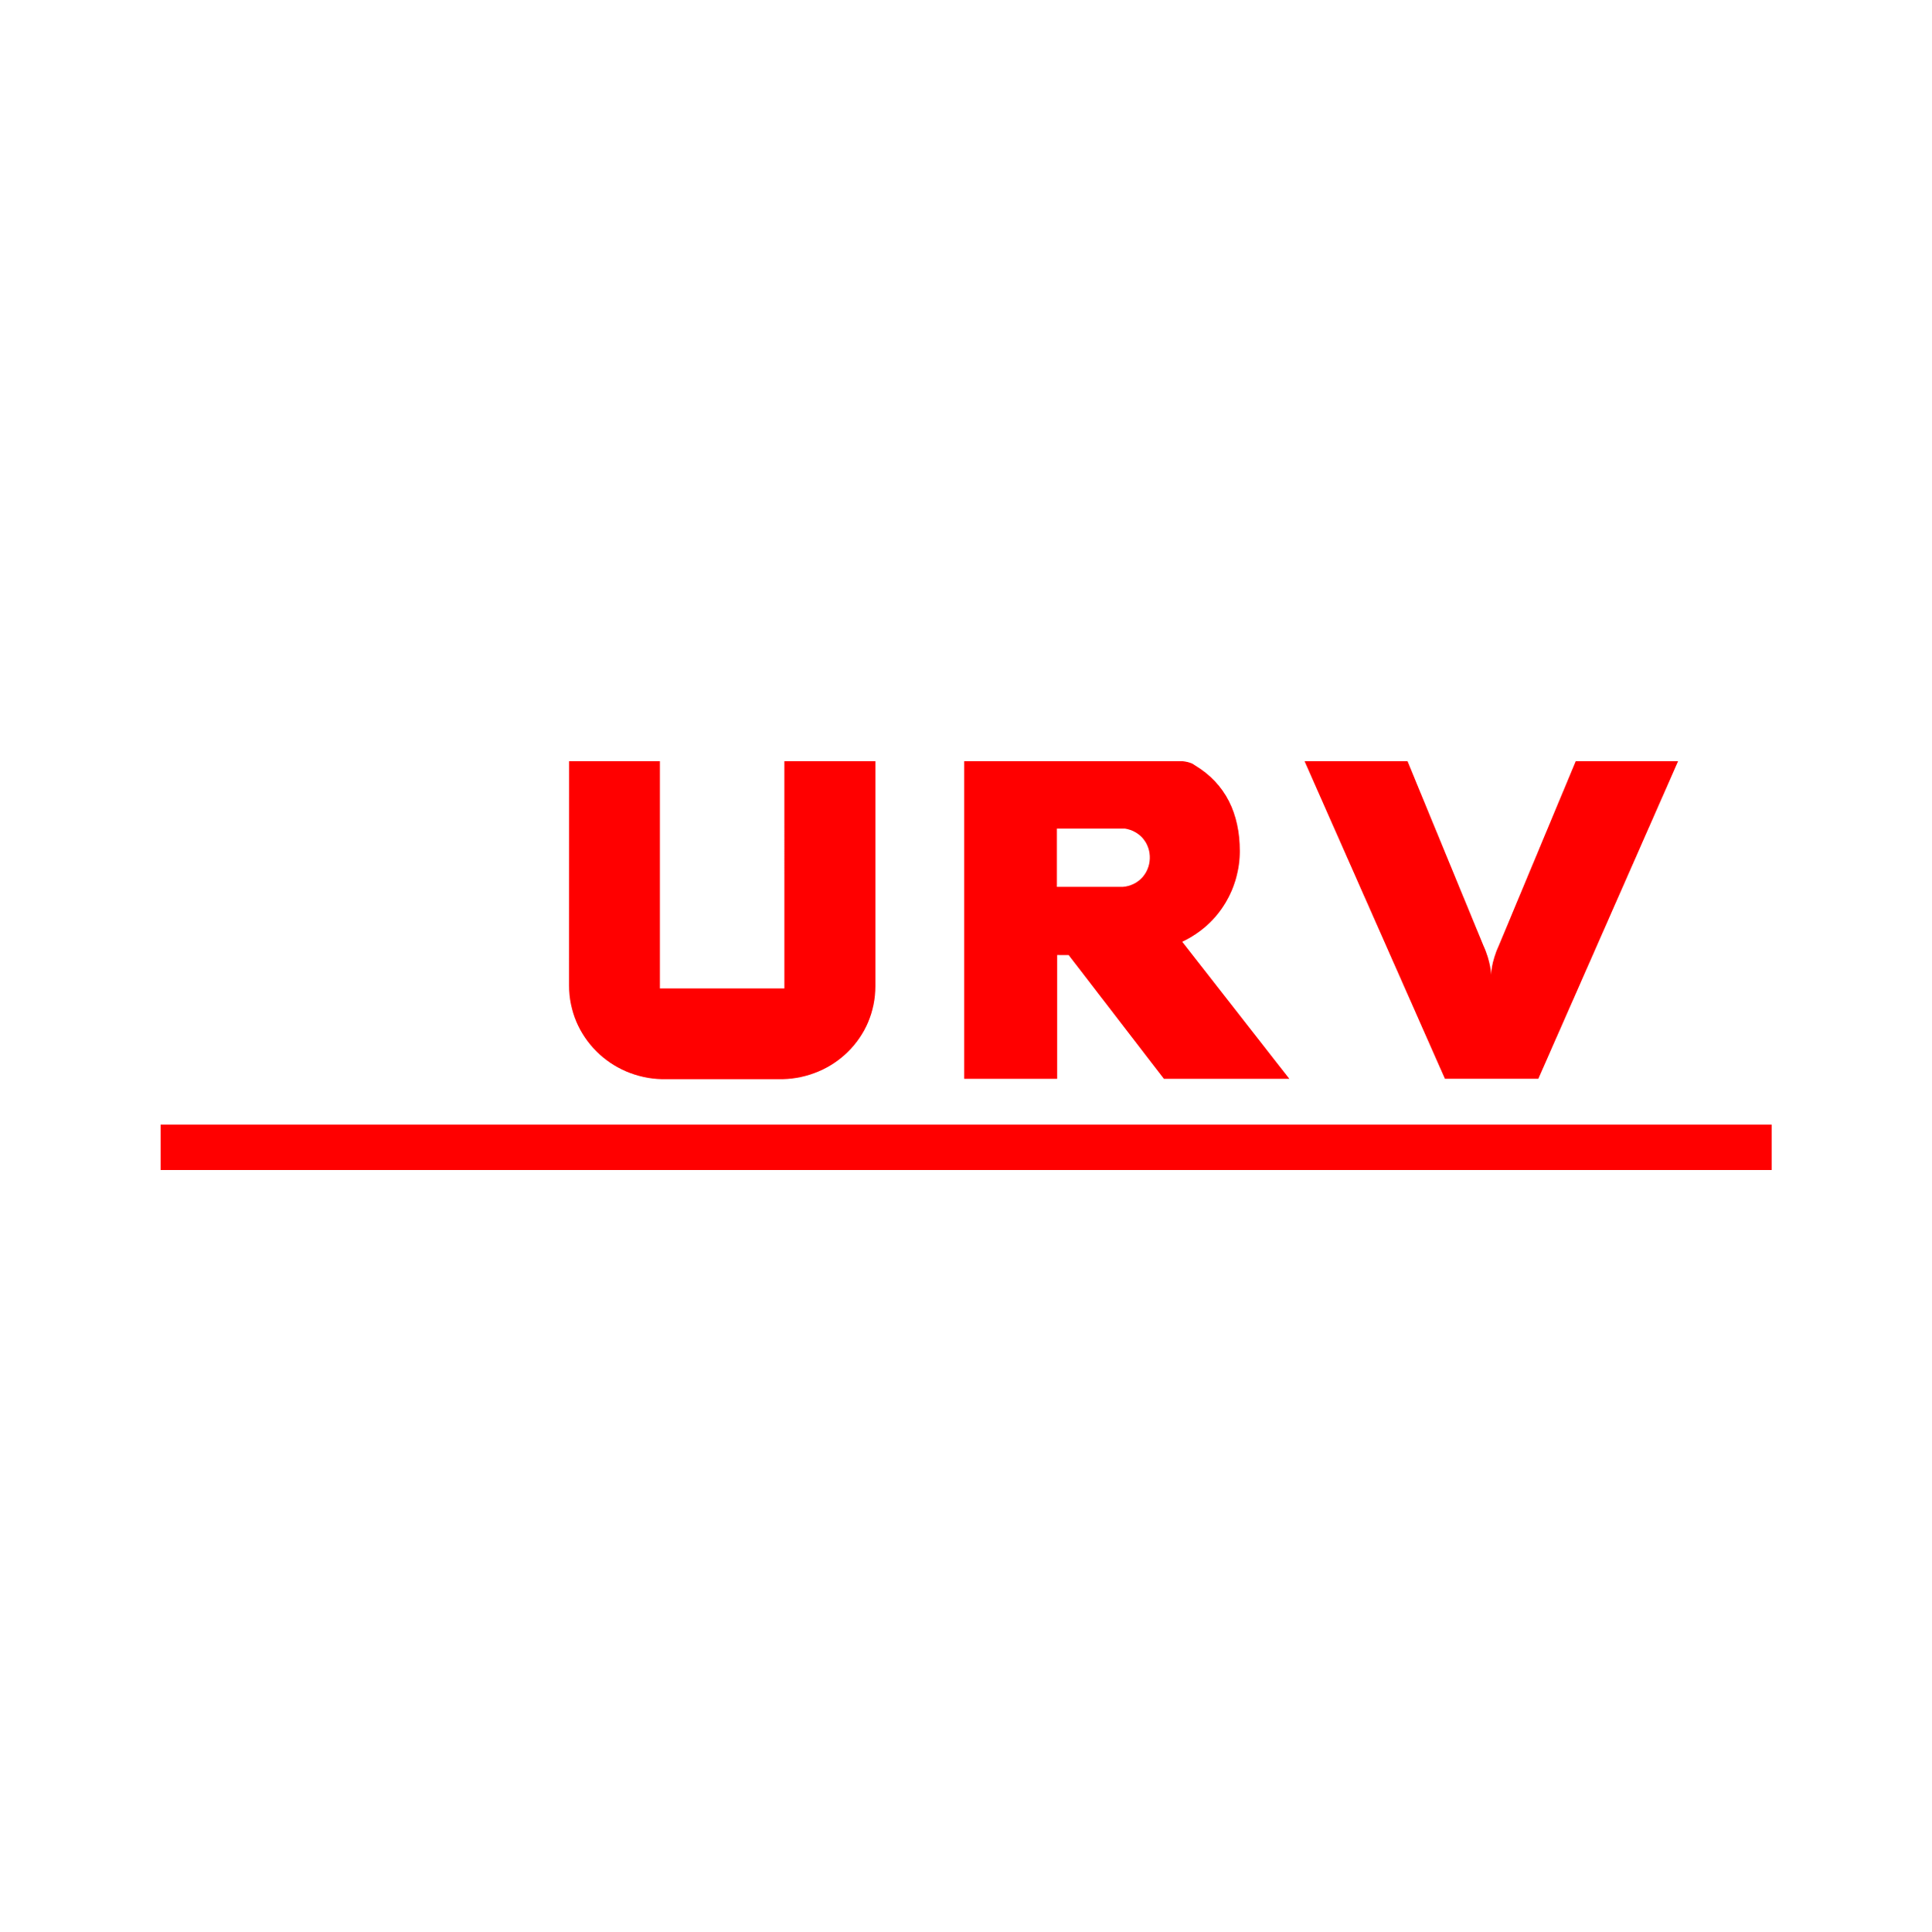 Union Reiseversicherung Logo  Transparent Photo